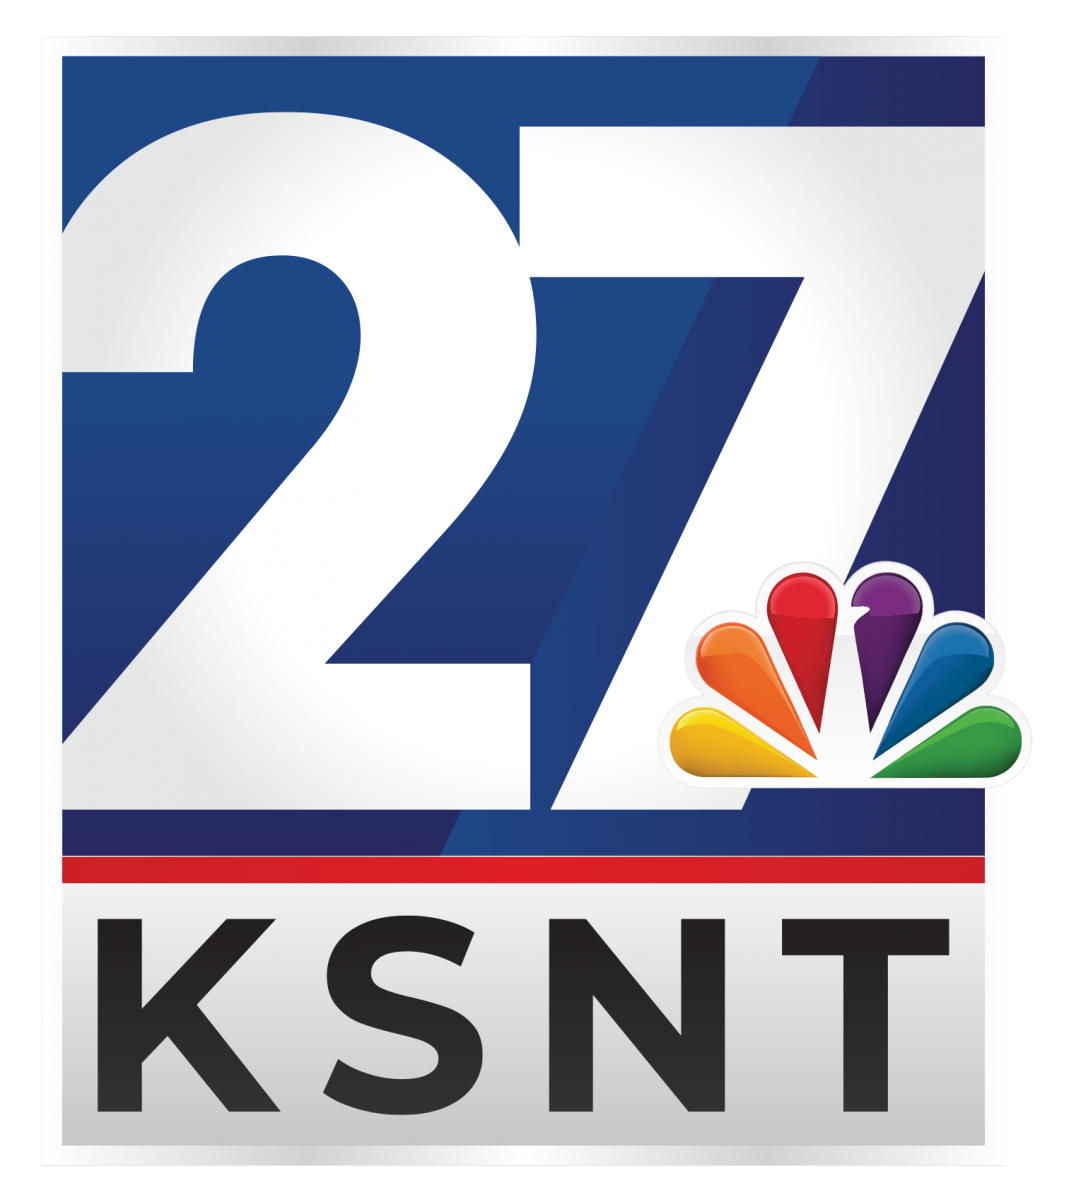 KSNT- Media Sponsor